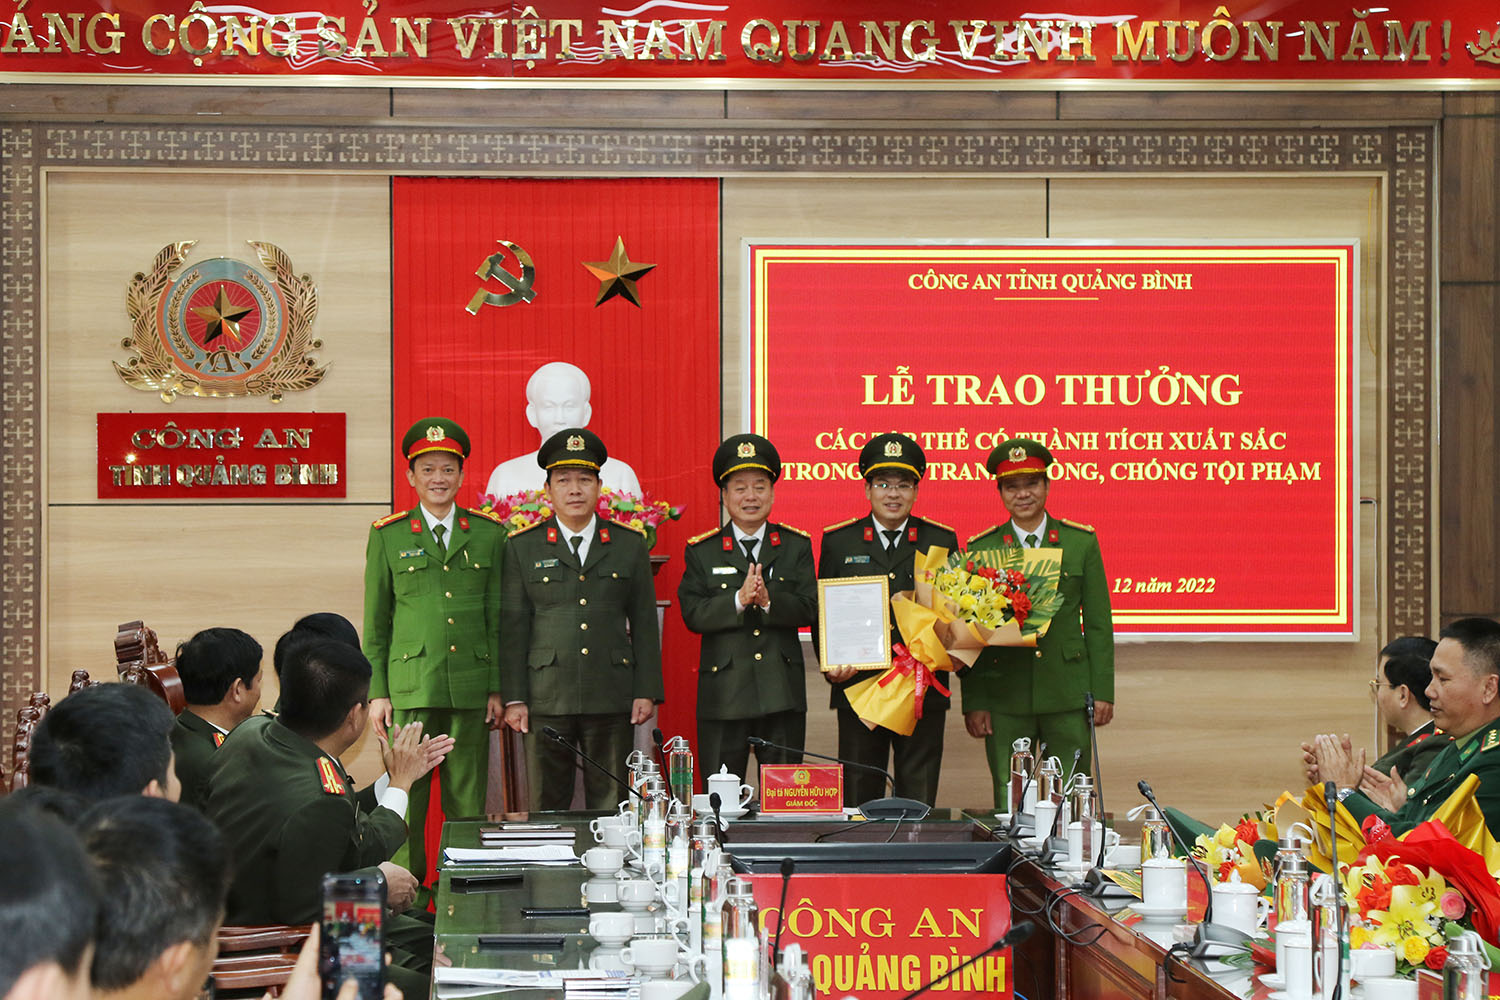 Đại tá Nguyễn Hữu Hợp, Giám đốc Công an tỉnh trao quyết định khen thưởng của Bộ Công an cho các đơn vị trong đấu tranh thành công chuyên án sử dụng mạng máy tính, mạng viễn thông, phương tiện điện tử chiếm đoạt tài sản.